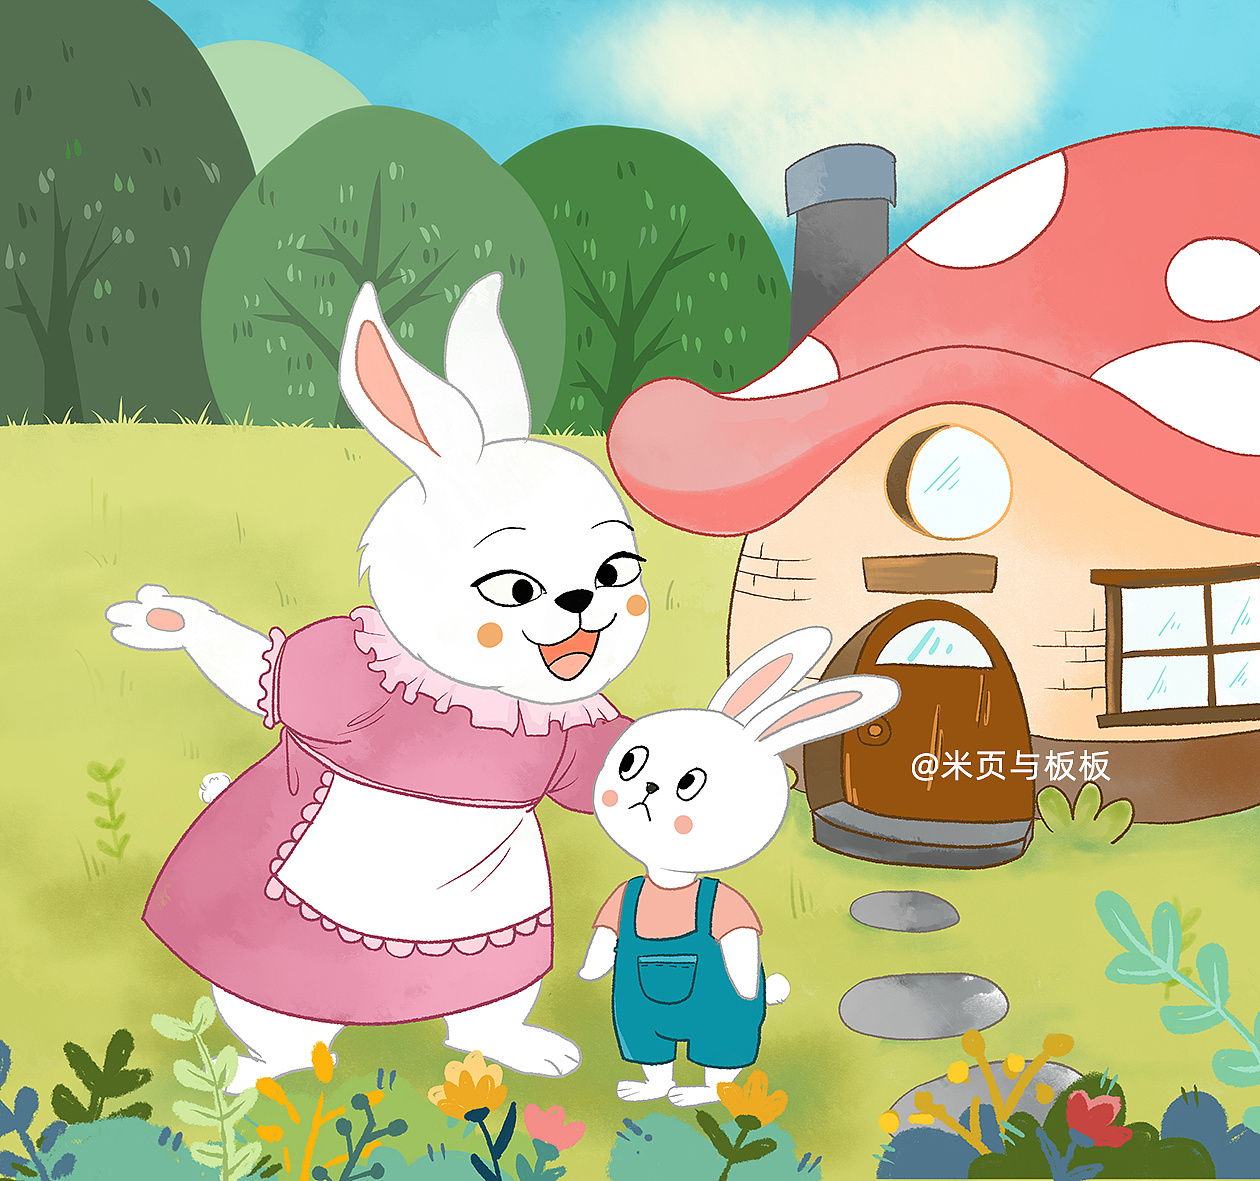 小白兔和兔妈妈搬到了一片新的大森林里,森林里同时还住着很多其他小